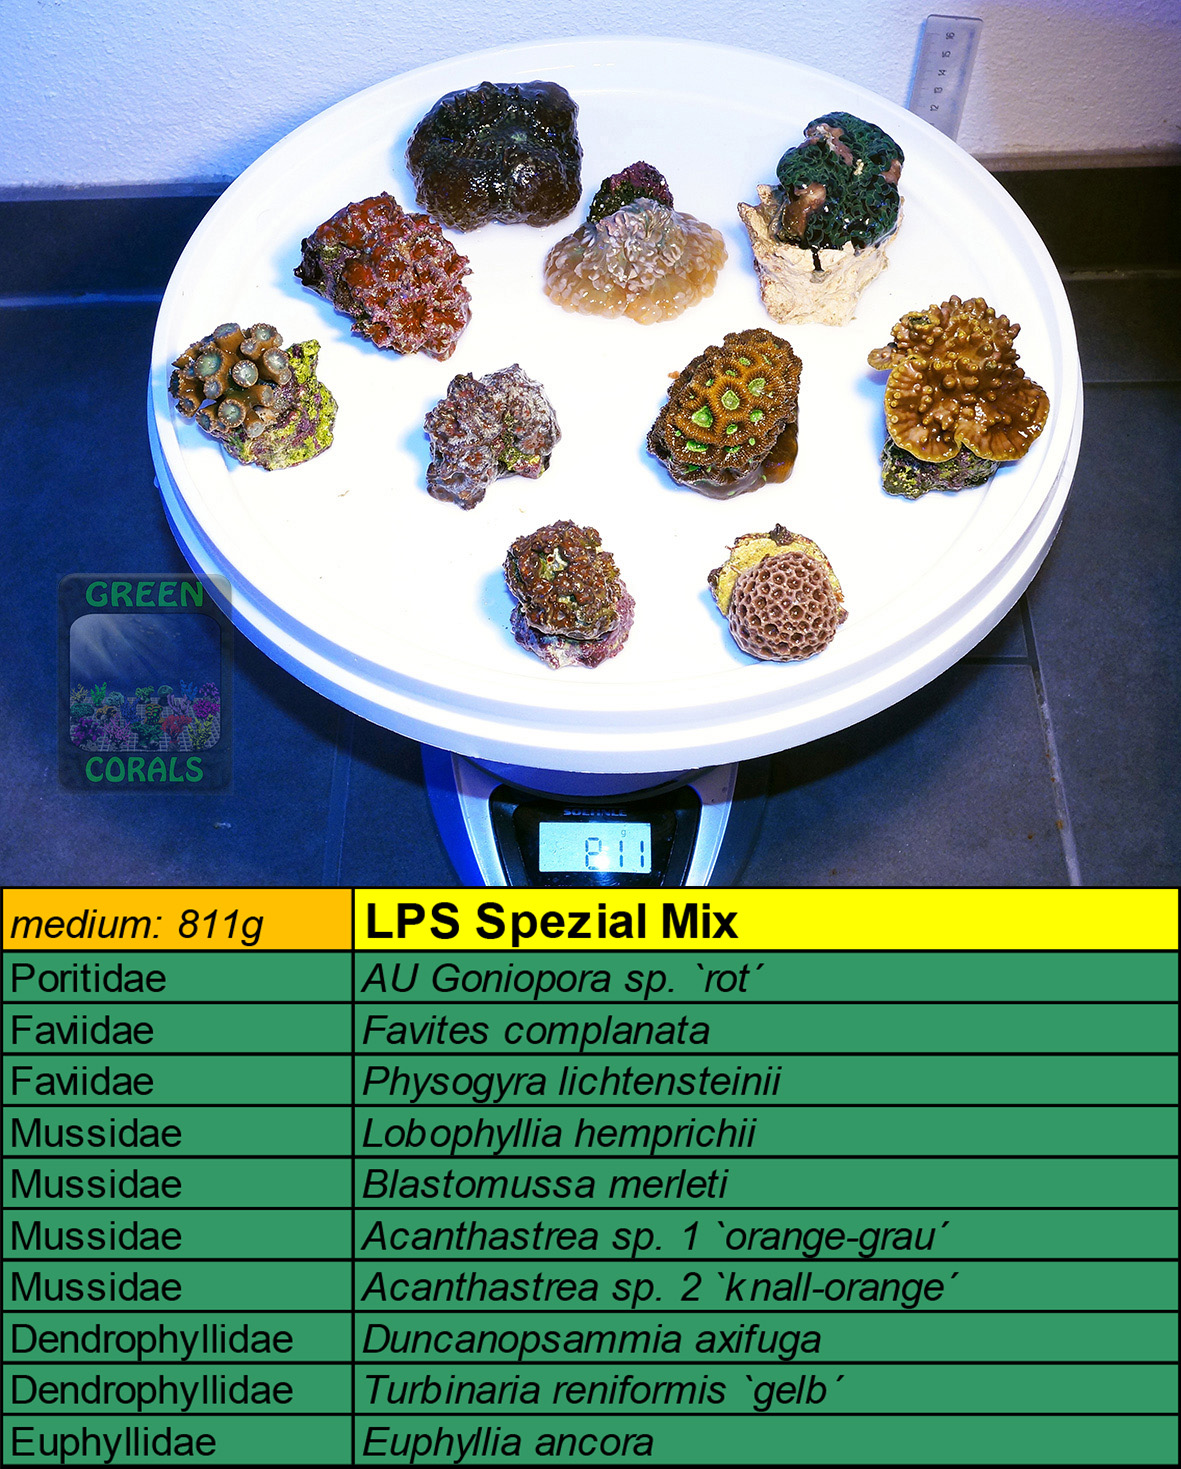 14 LPS Spezial Mix 811g